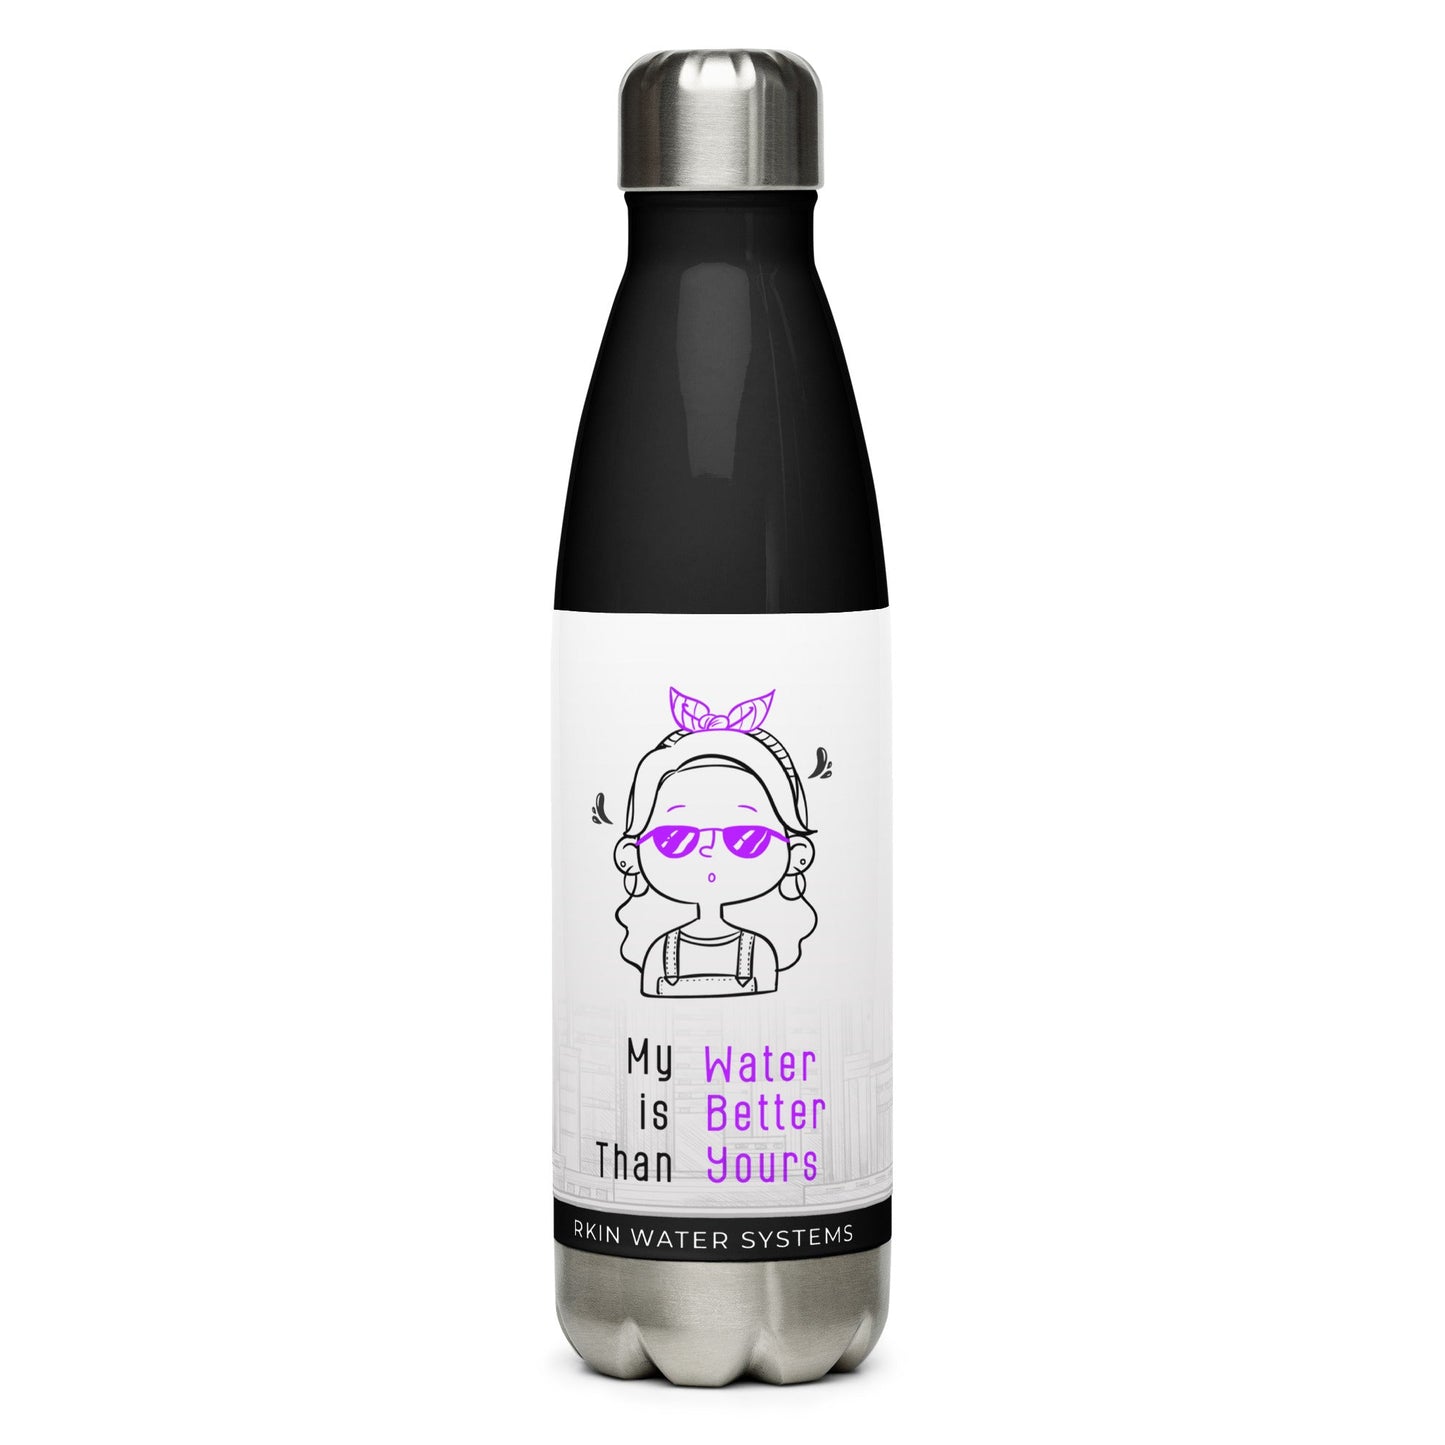 Stainless steel water bottle #1 - RKIN